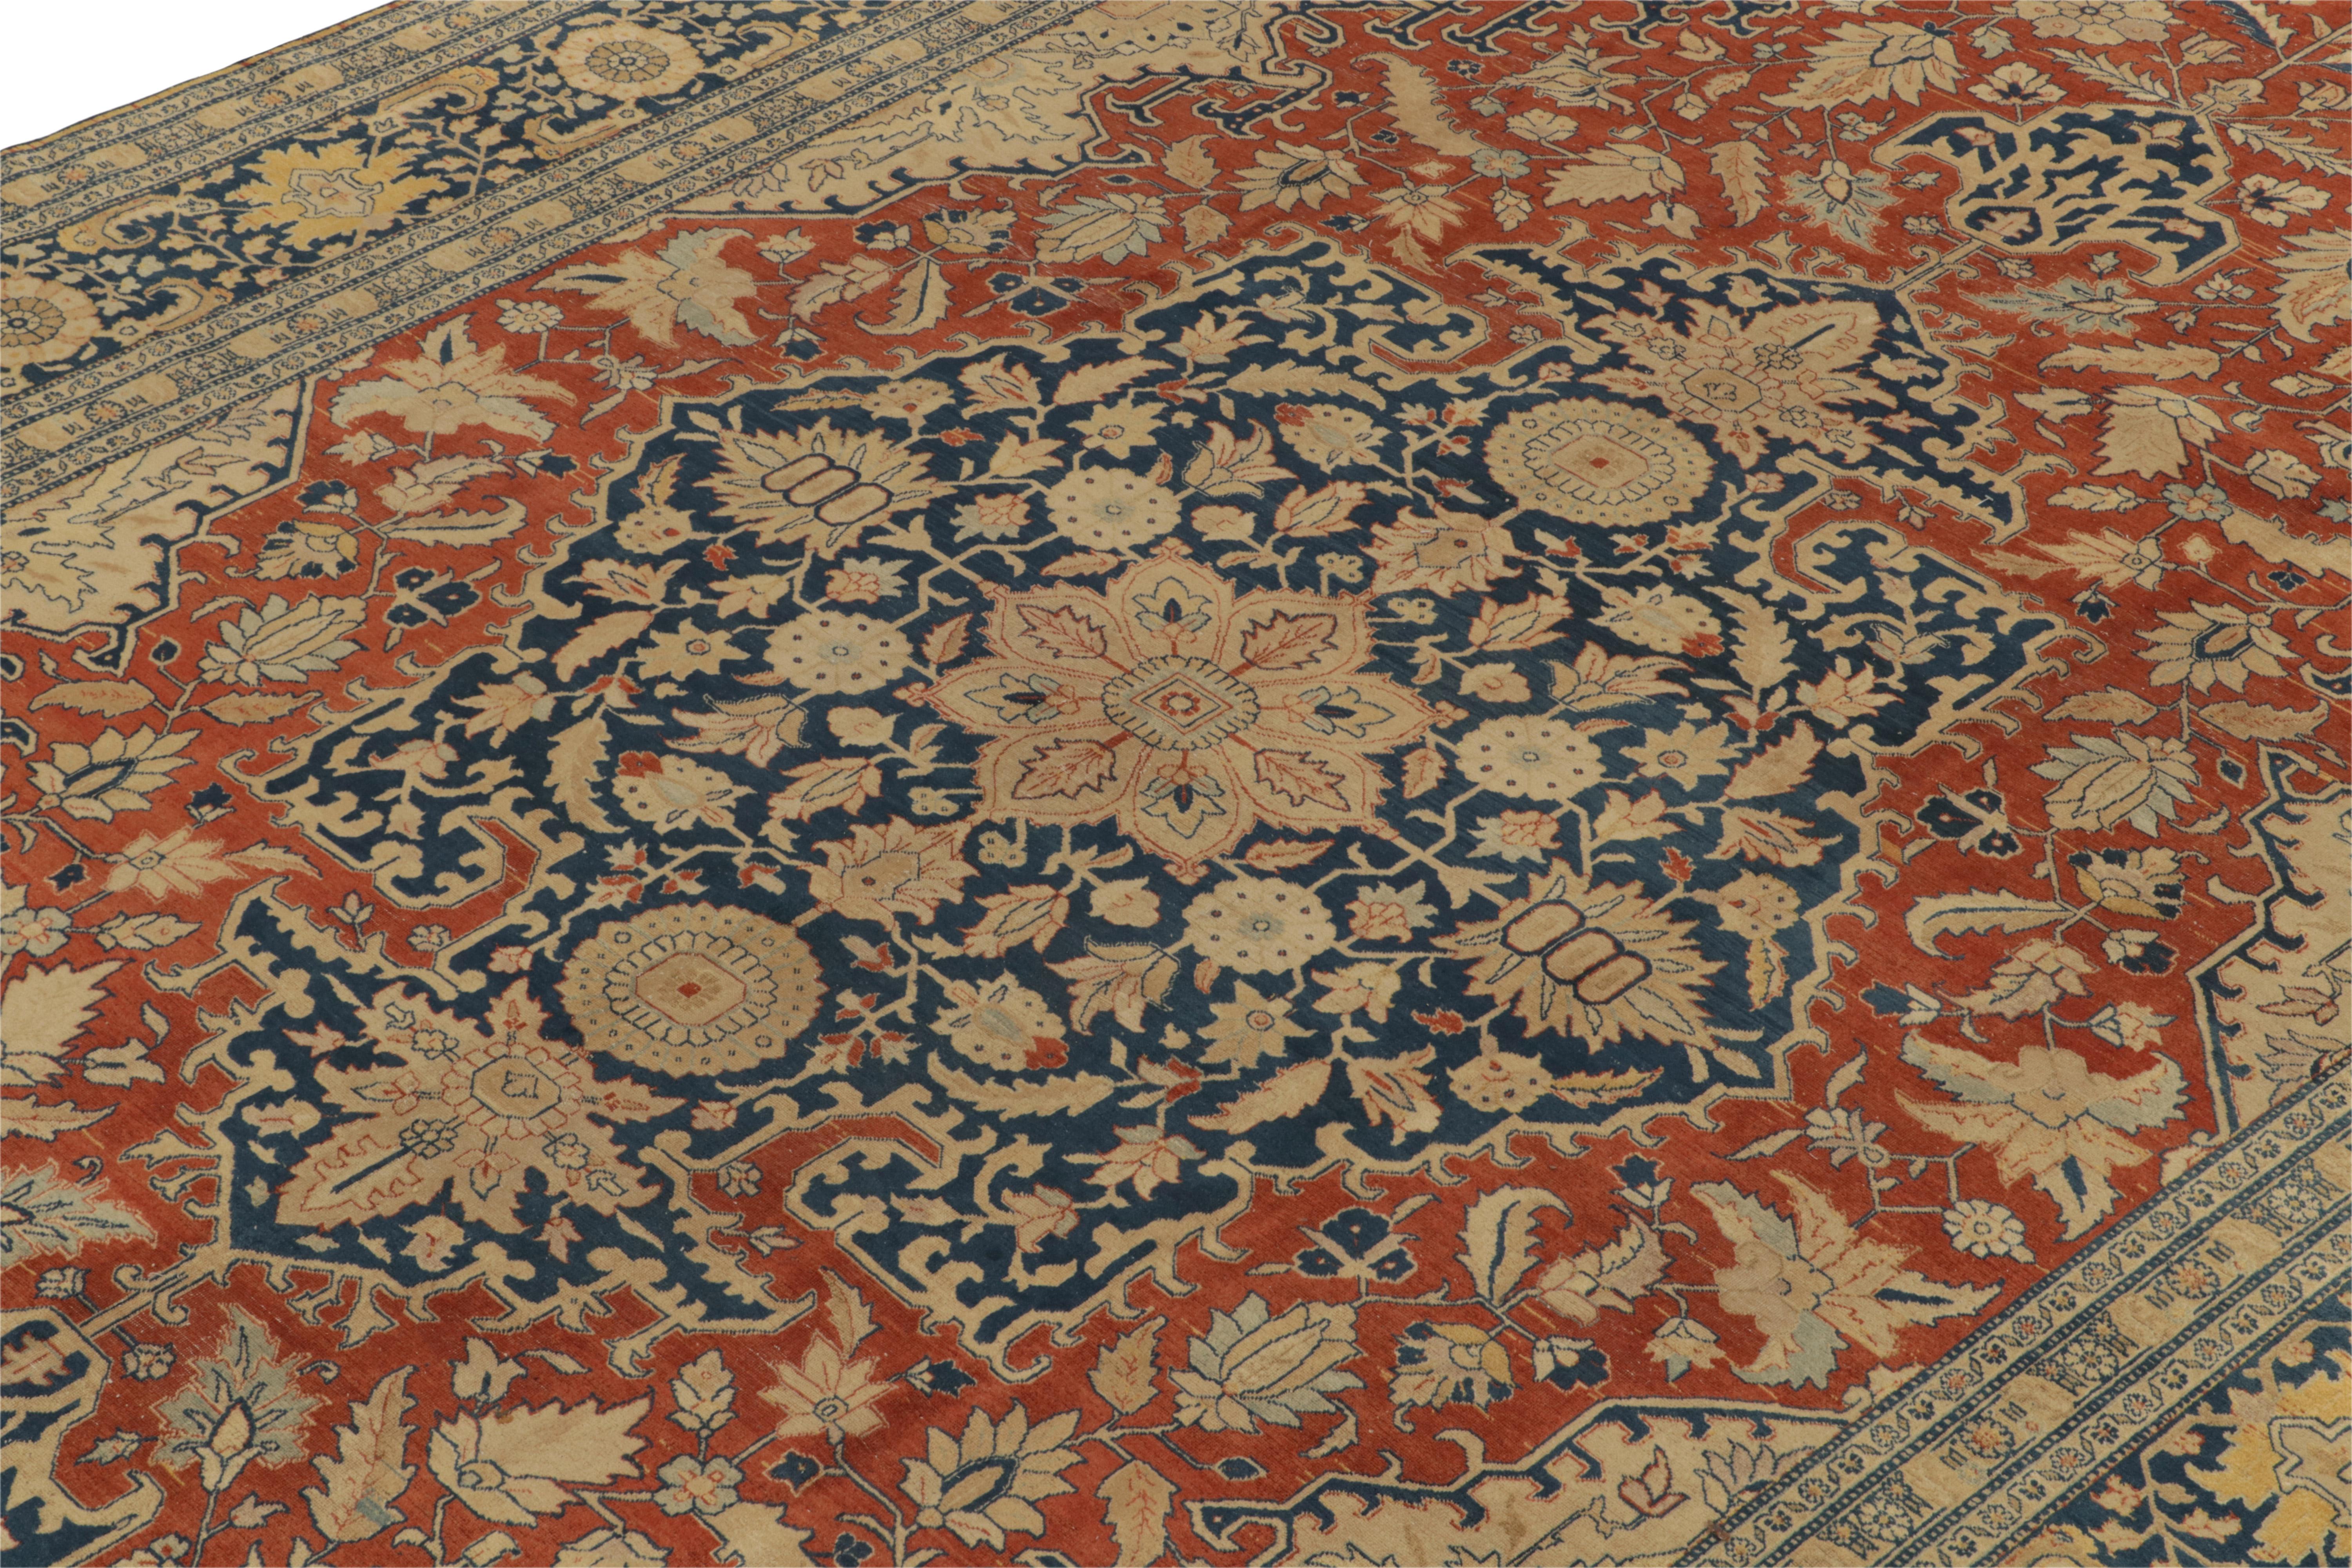 Hand-Knotted Antique Tabriz rug in Orange Blue, Beige Floral Medallion Pattern by Rug & Kilim For Sale